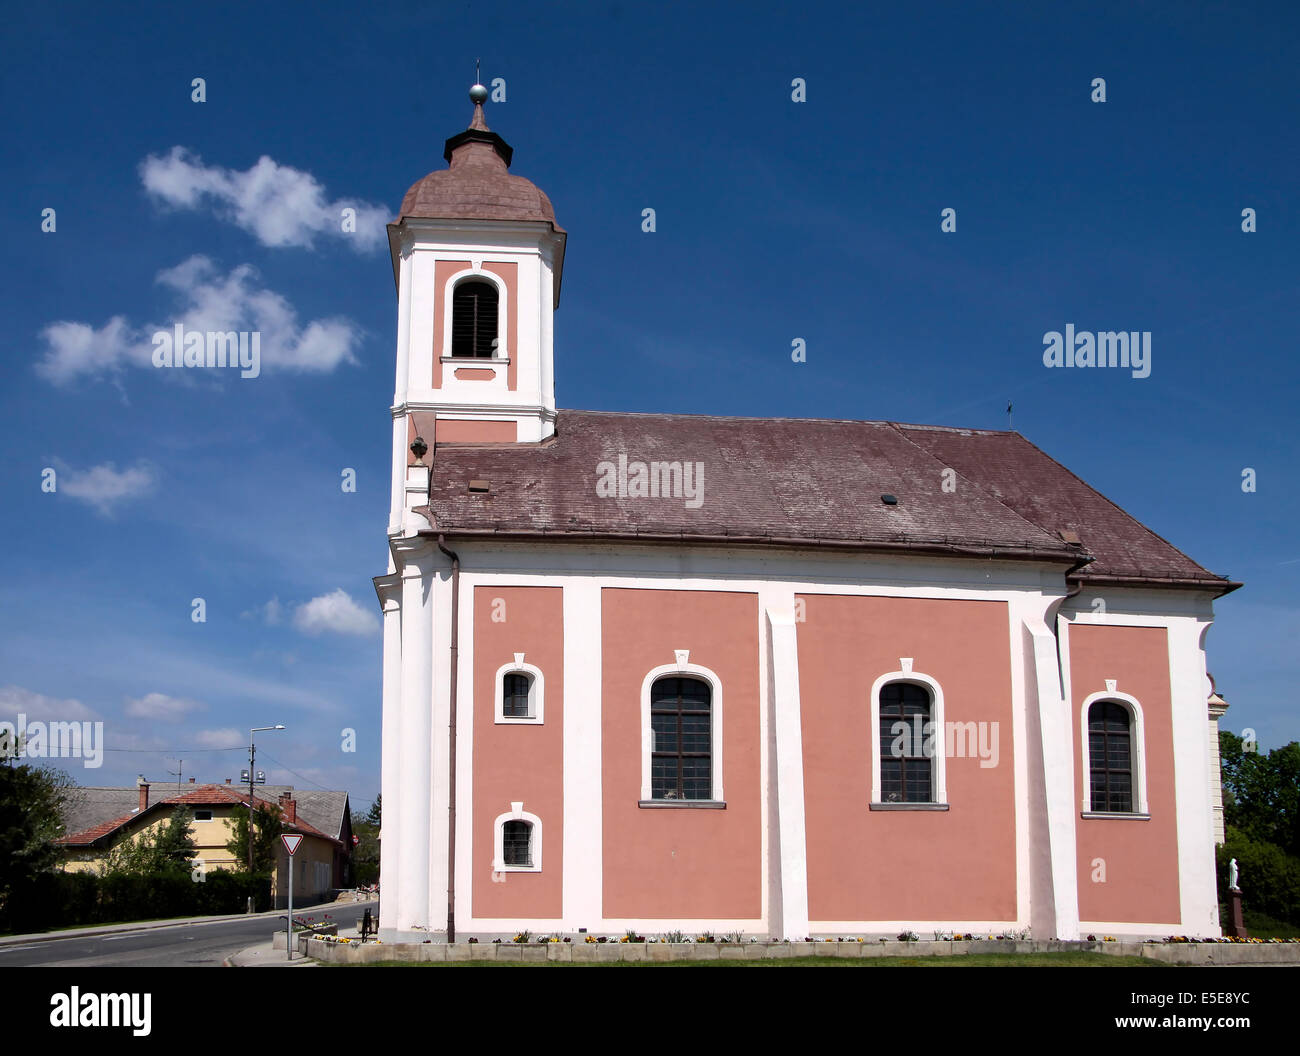 Batatonalmadi village church near Lake Balaton, Hungary Stock Photo